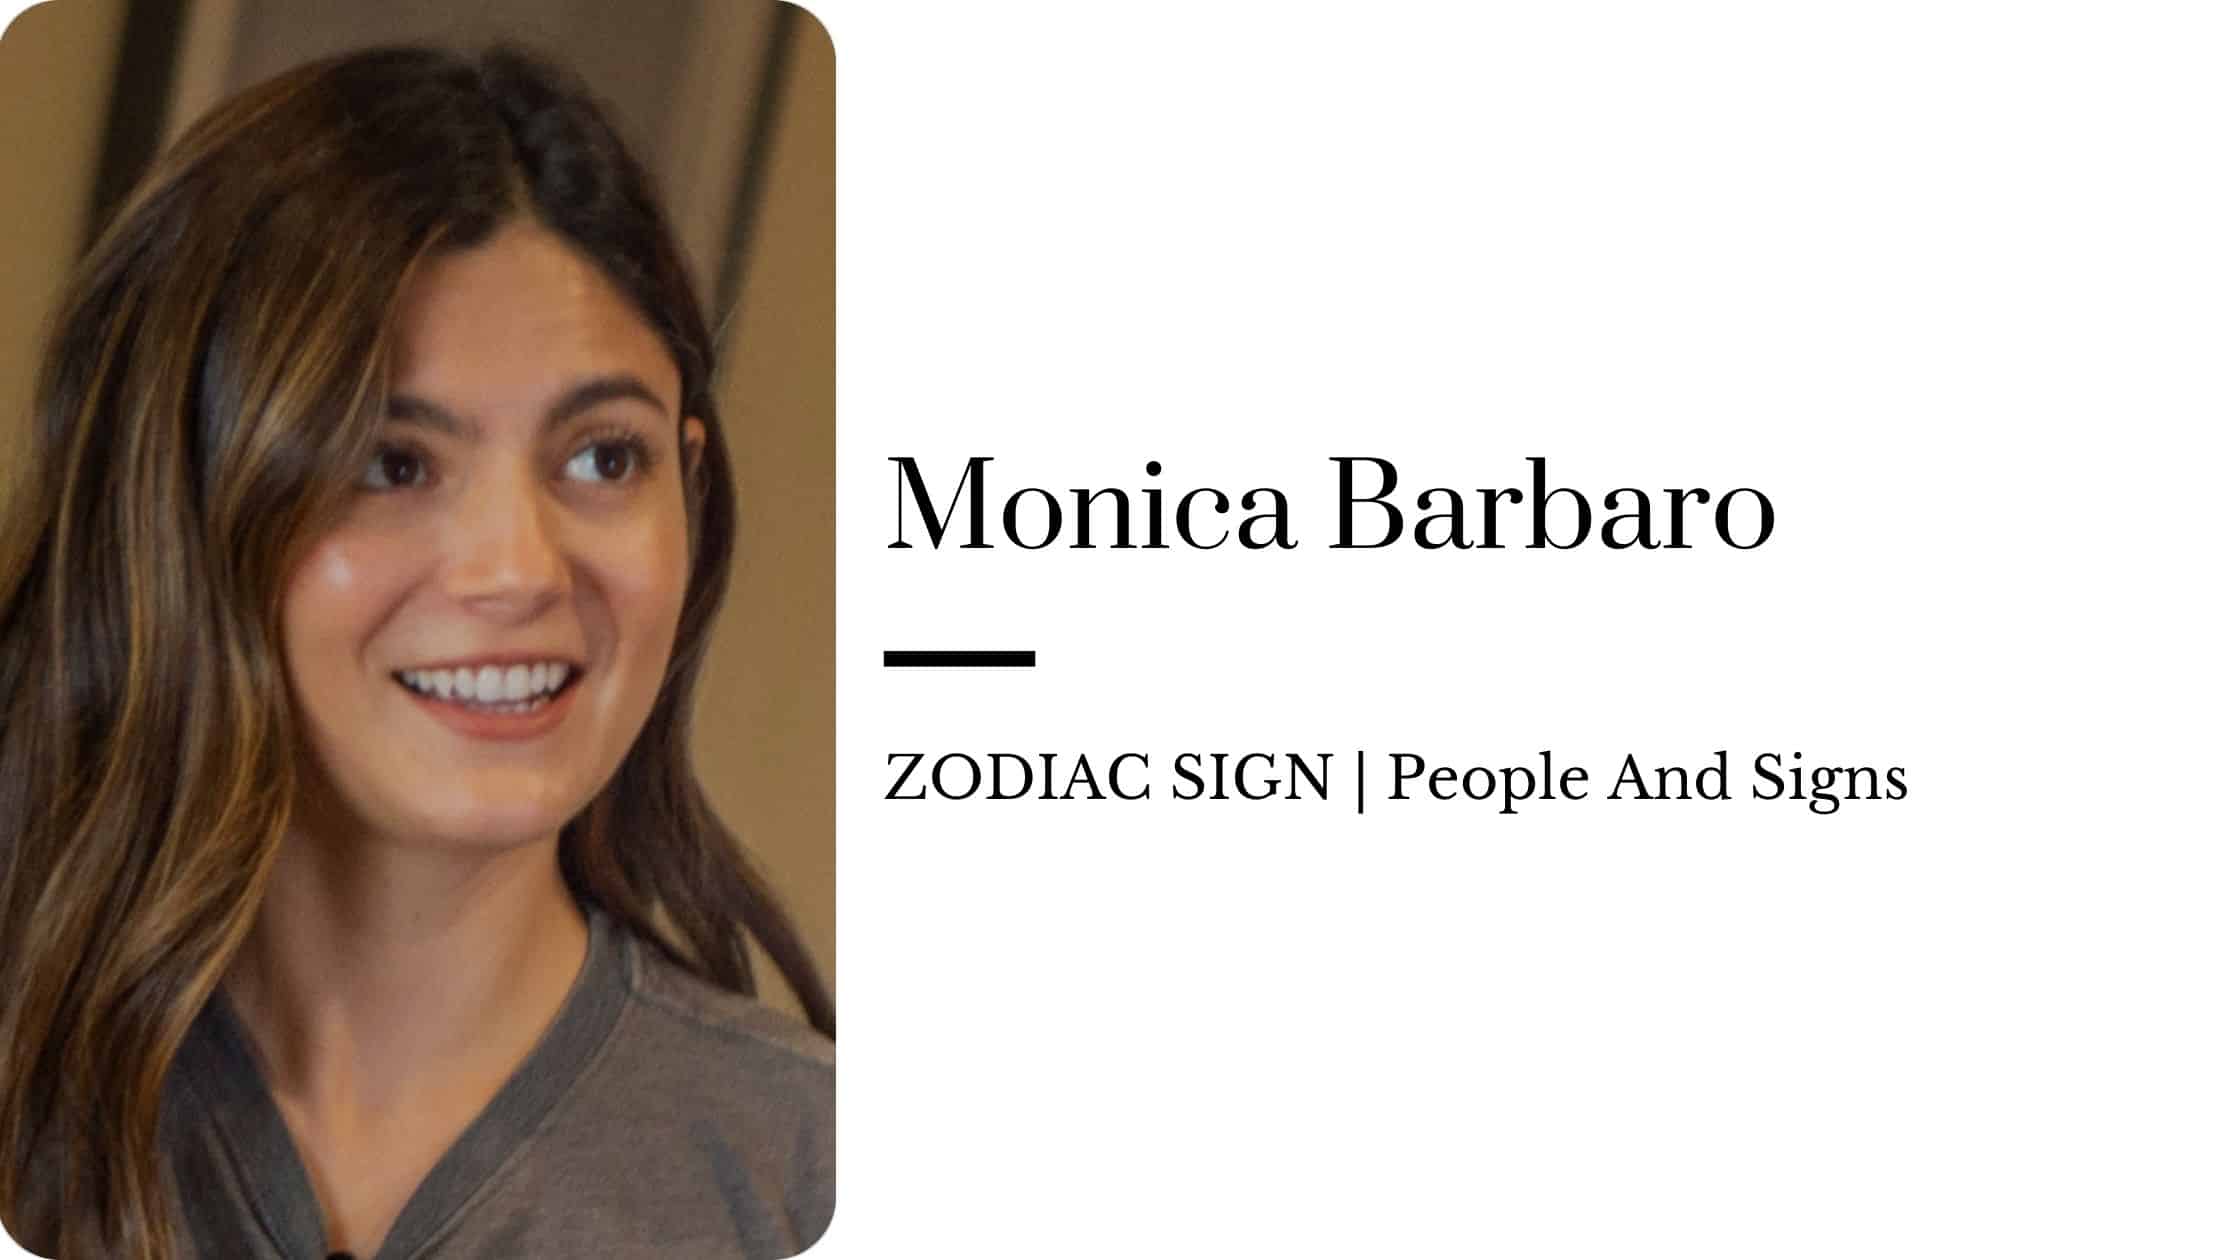 Monica Barbaro zodiac sign